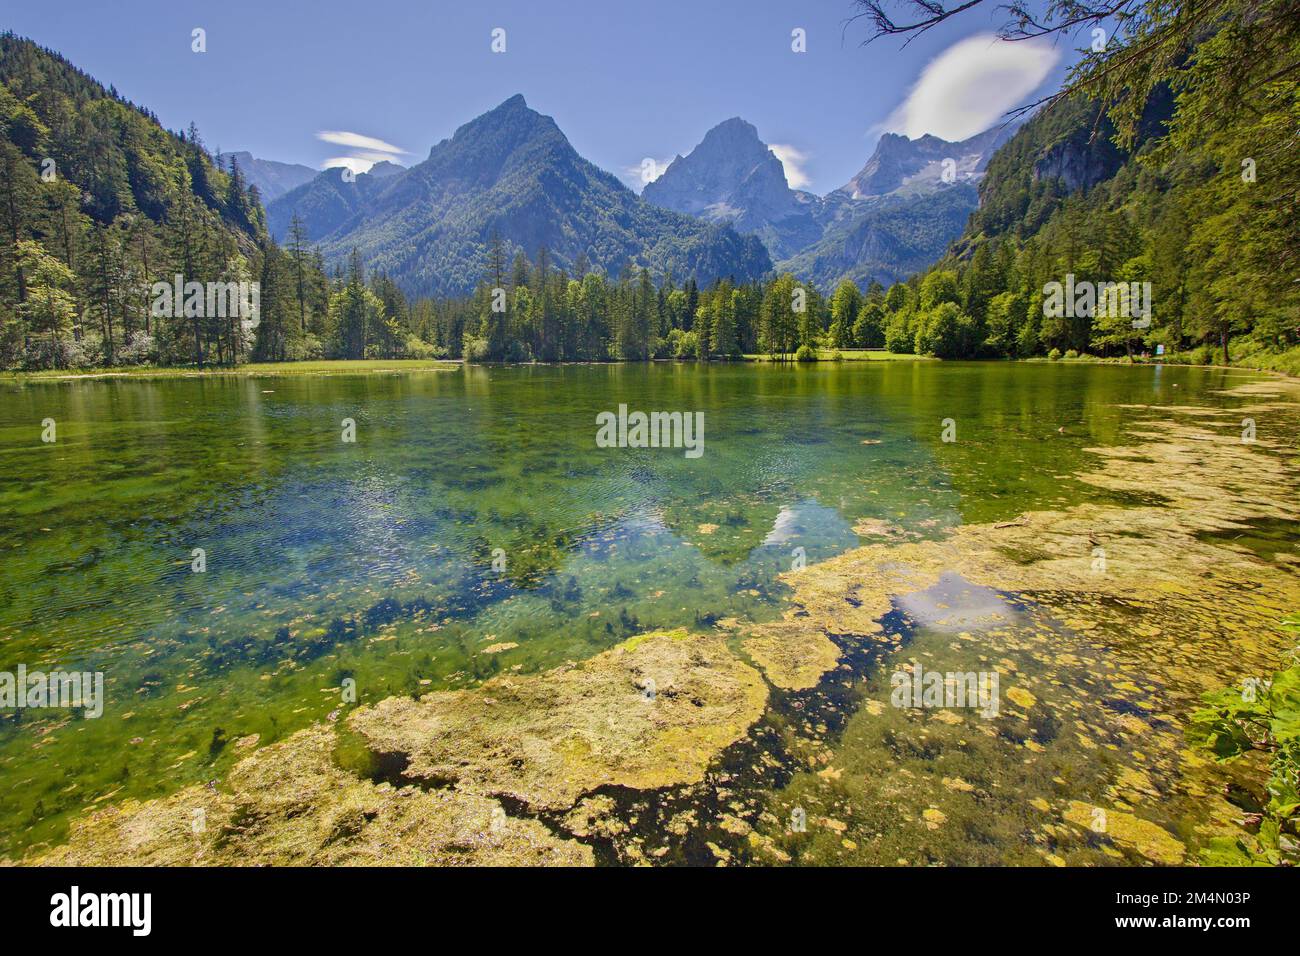 Schiederweiher lake with the weir in Hinterstoder, Austria Stock Photo